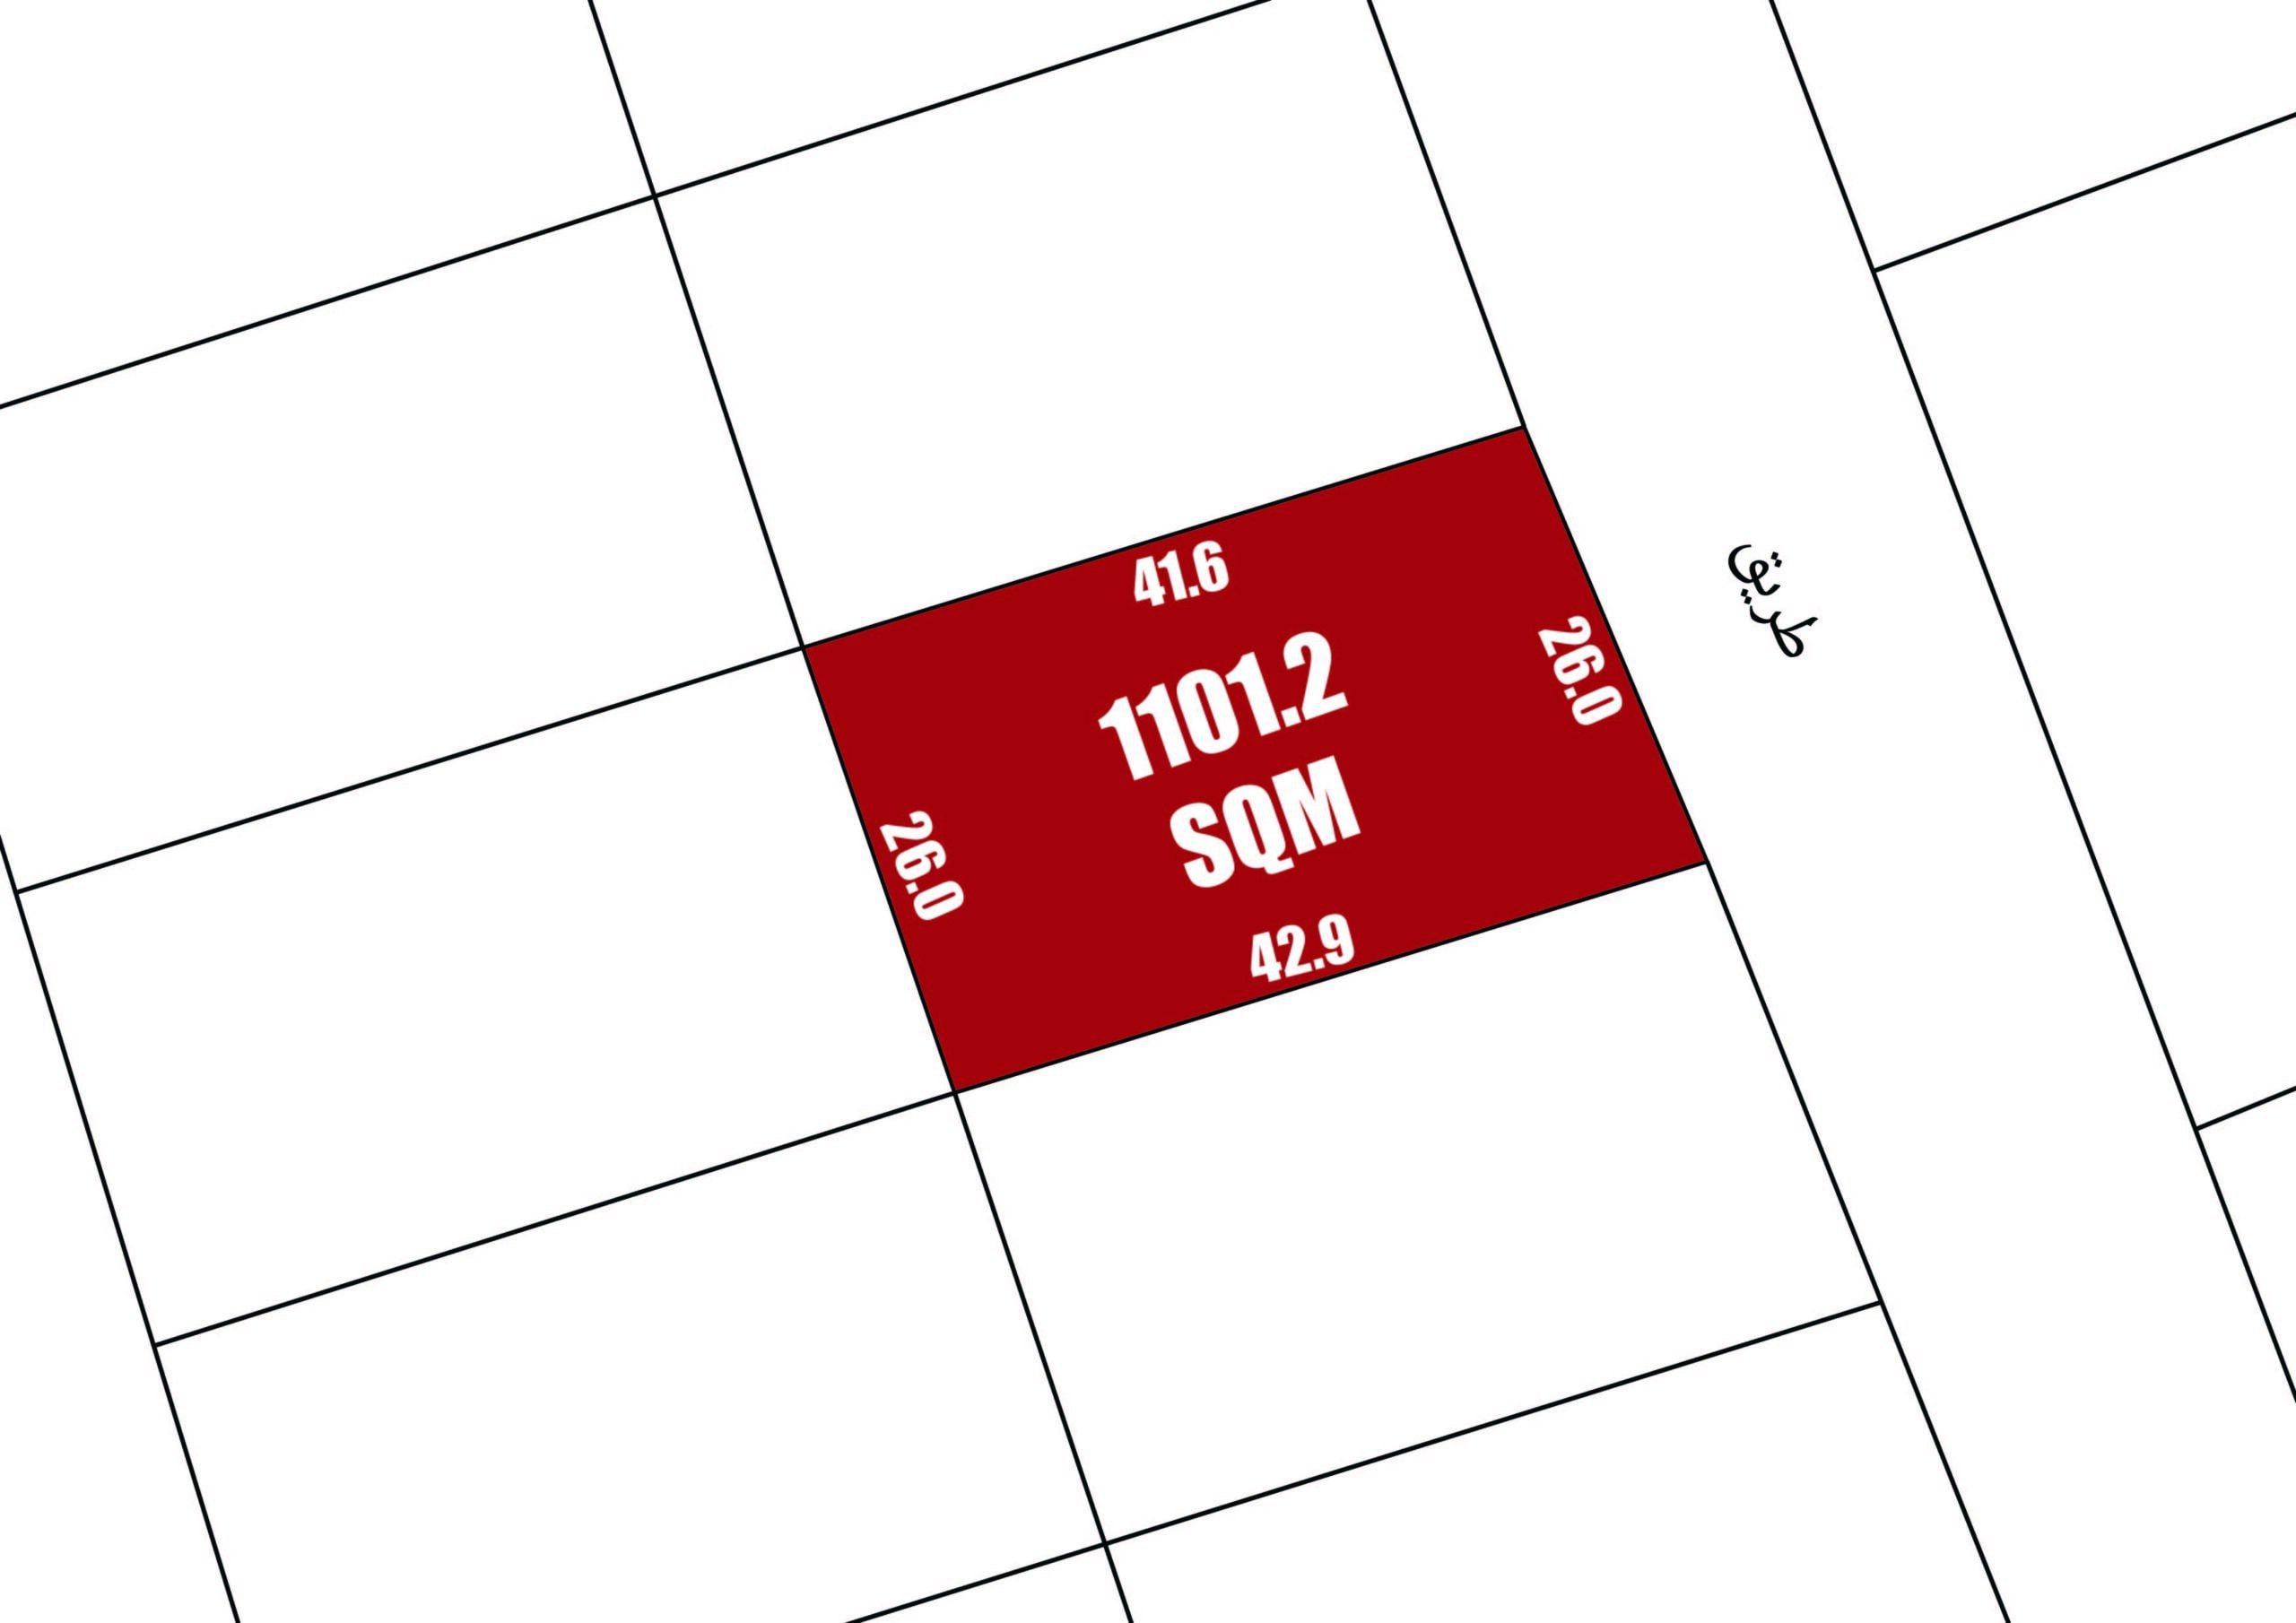 ارض للبيع في راس زويد | ١،١٠١.٢ متر مربع